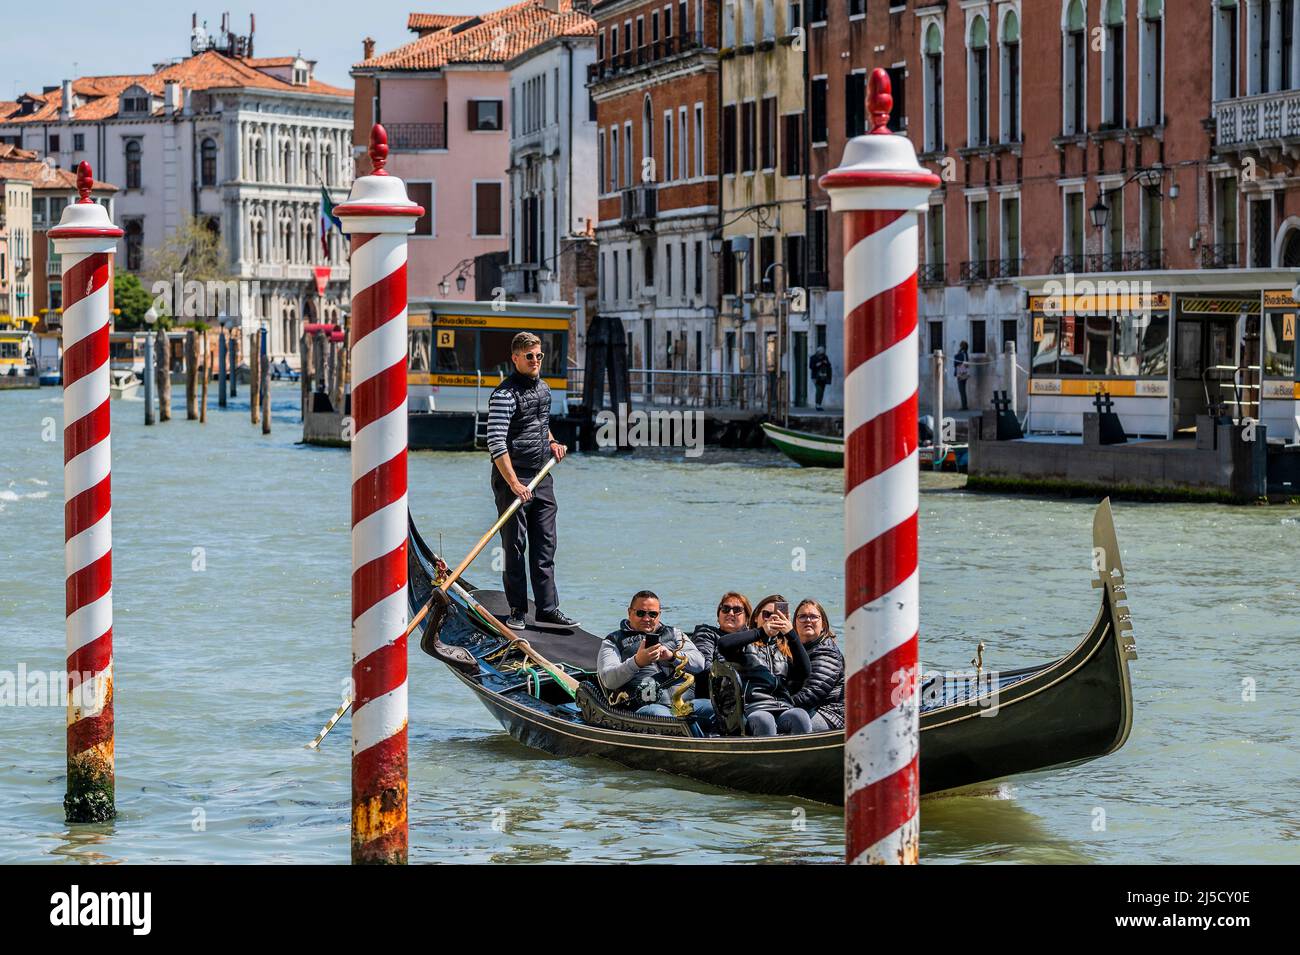 Les gondoles sont un moyen de transport maritime préféré, bien que cher, sur le Grand Canal. Les canaux sont les artères principales qui portent toutes les formes de transport de l'eau - Venise au début de la Biennale di Venezia en 2022. Banque D'Images